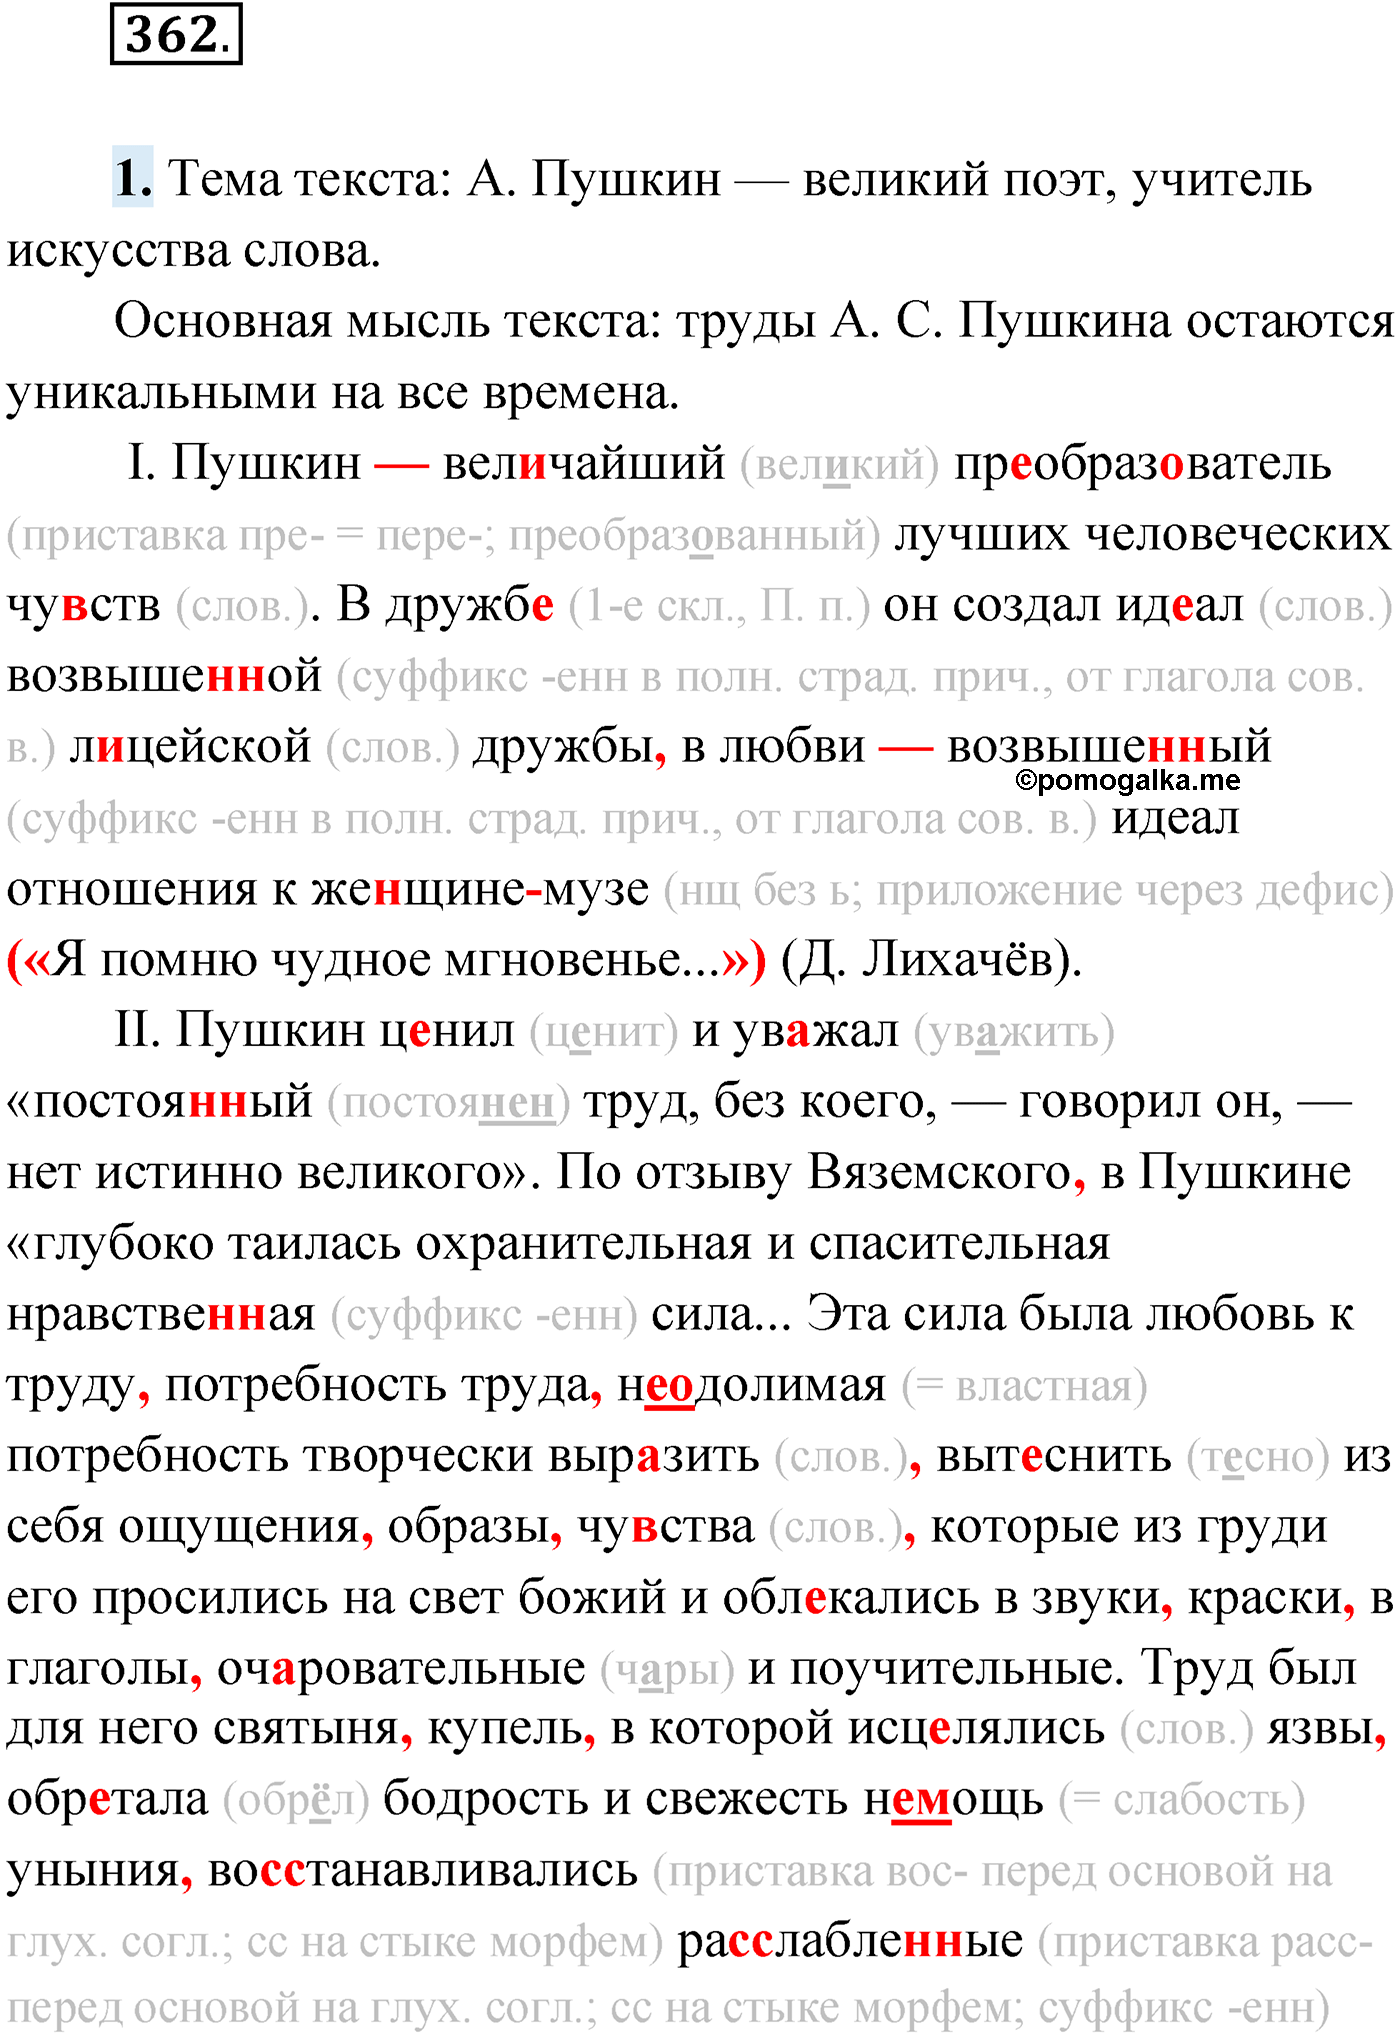 упражнение №362 русский язык 9 класс Мурина 2019 год